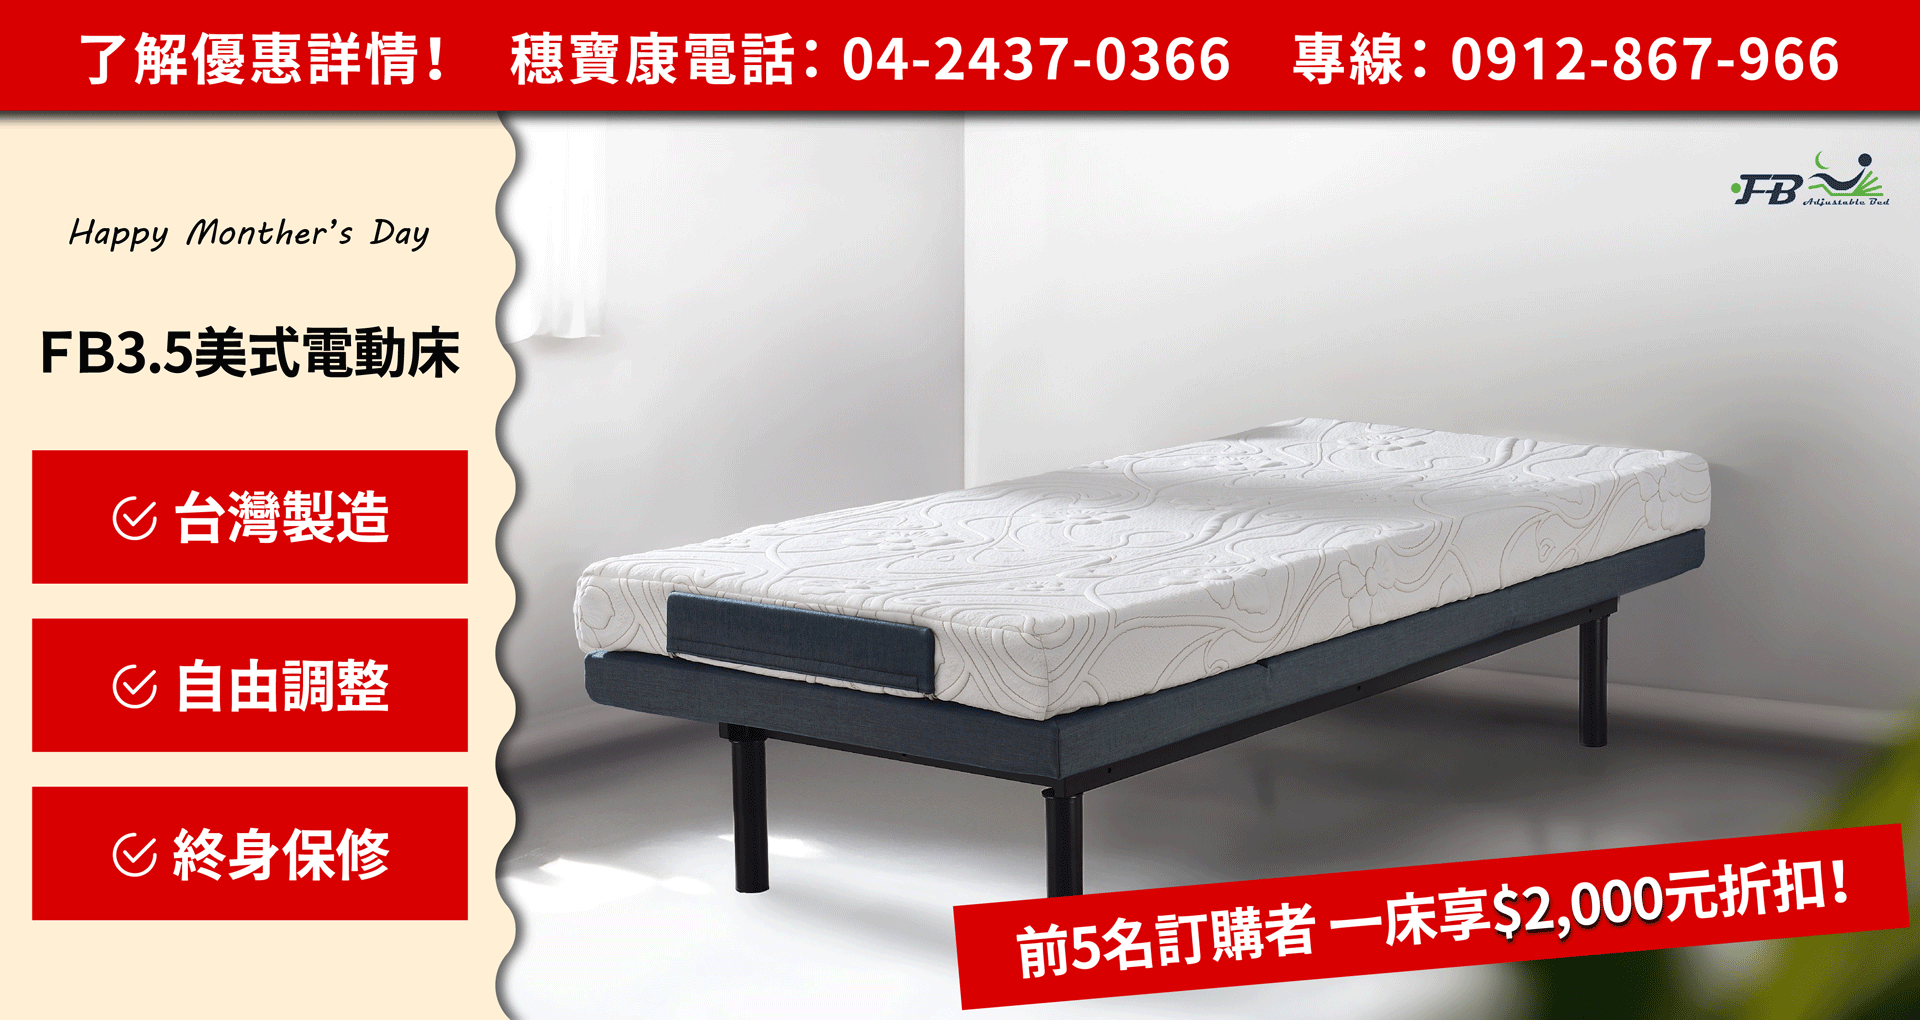 電動床、電動床價格、電動床推薦、電動床架